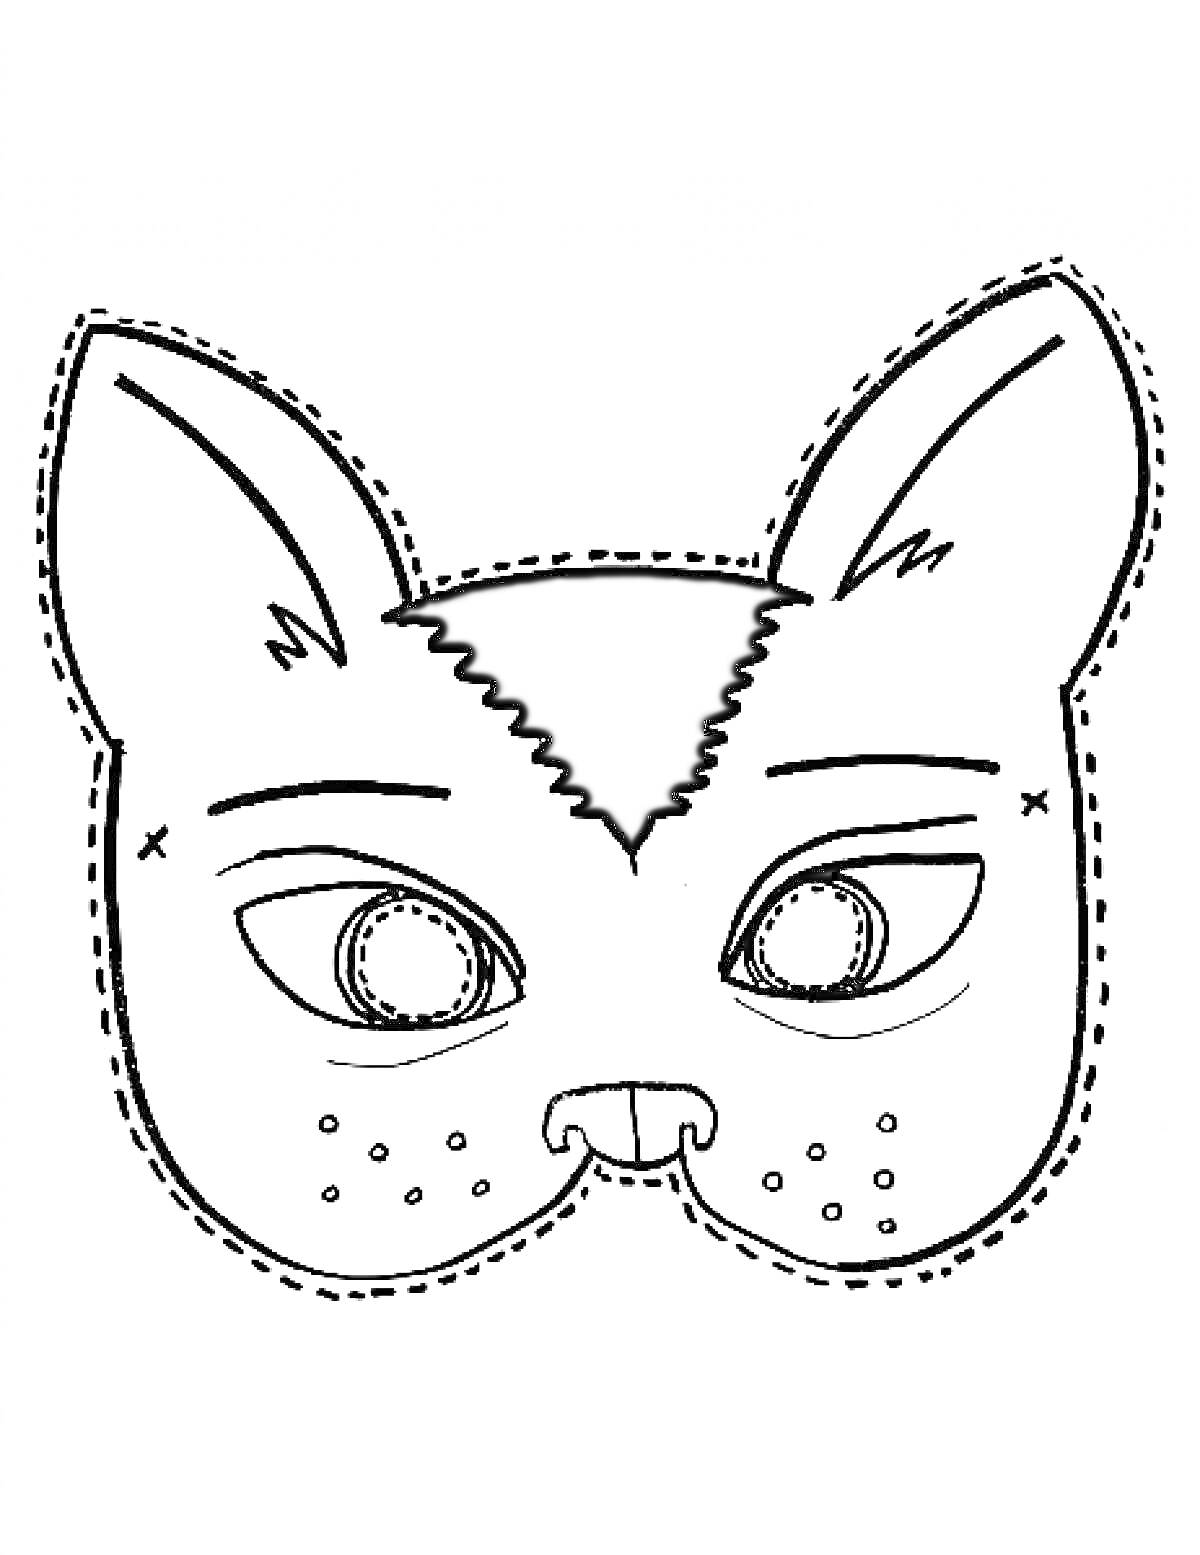 Маска кошки с ушами, глазами, носом и щеками с пятнышками